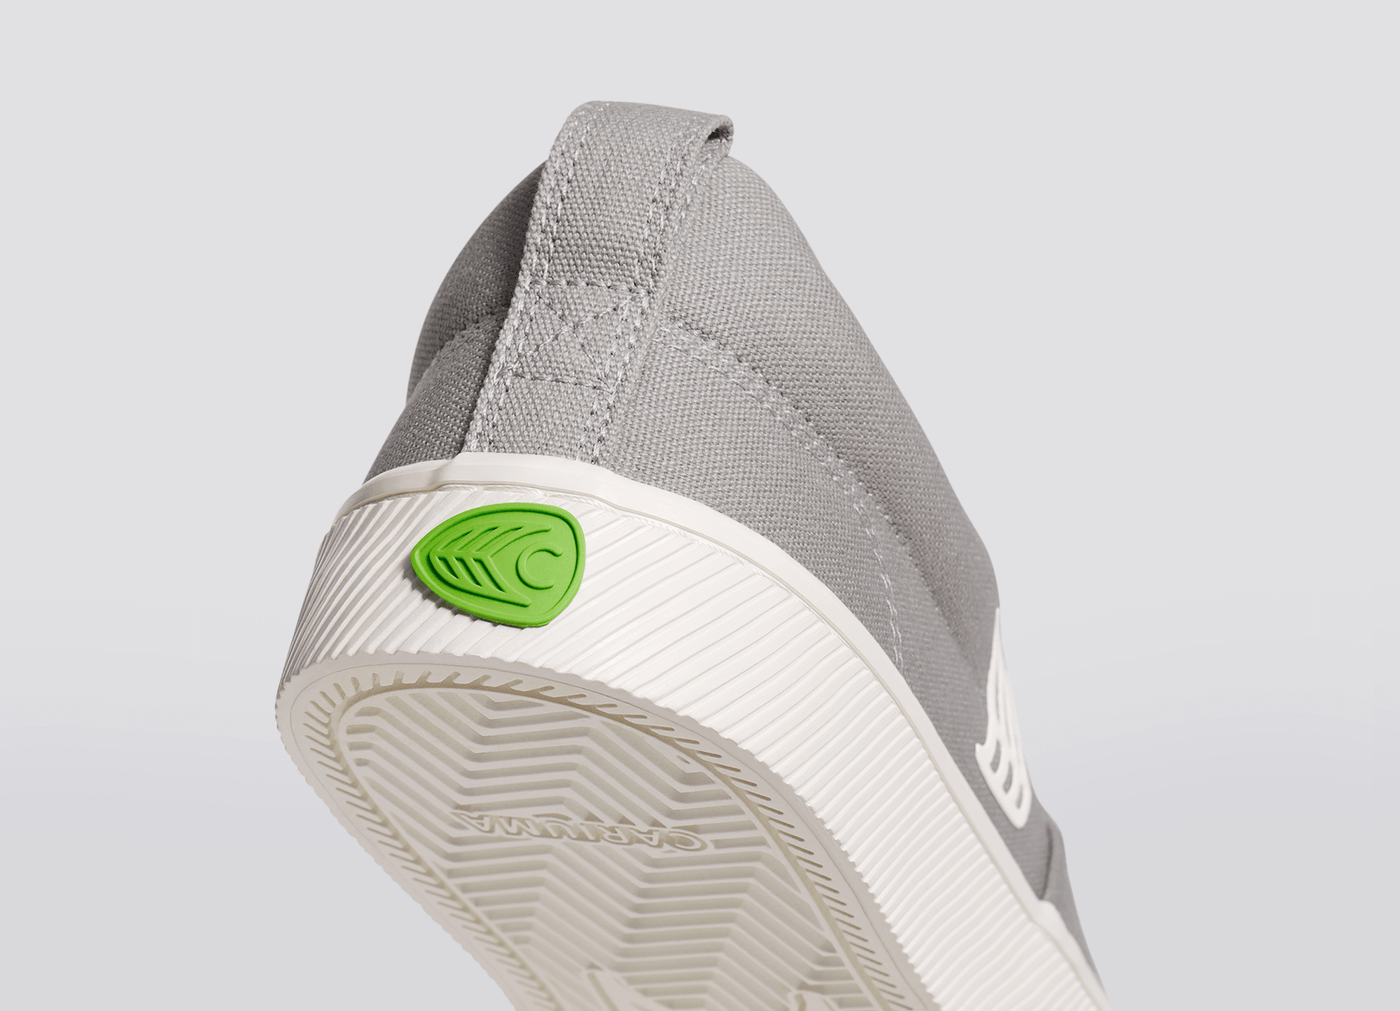 SLIP ON Light Grey Canvas Off-White Logo Sneaker Women